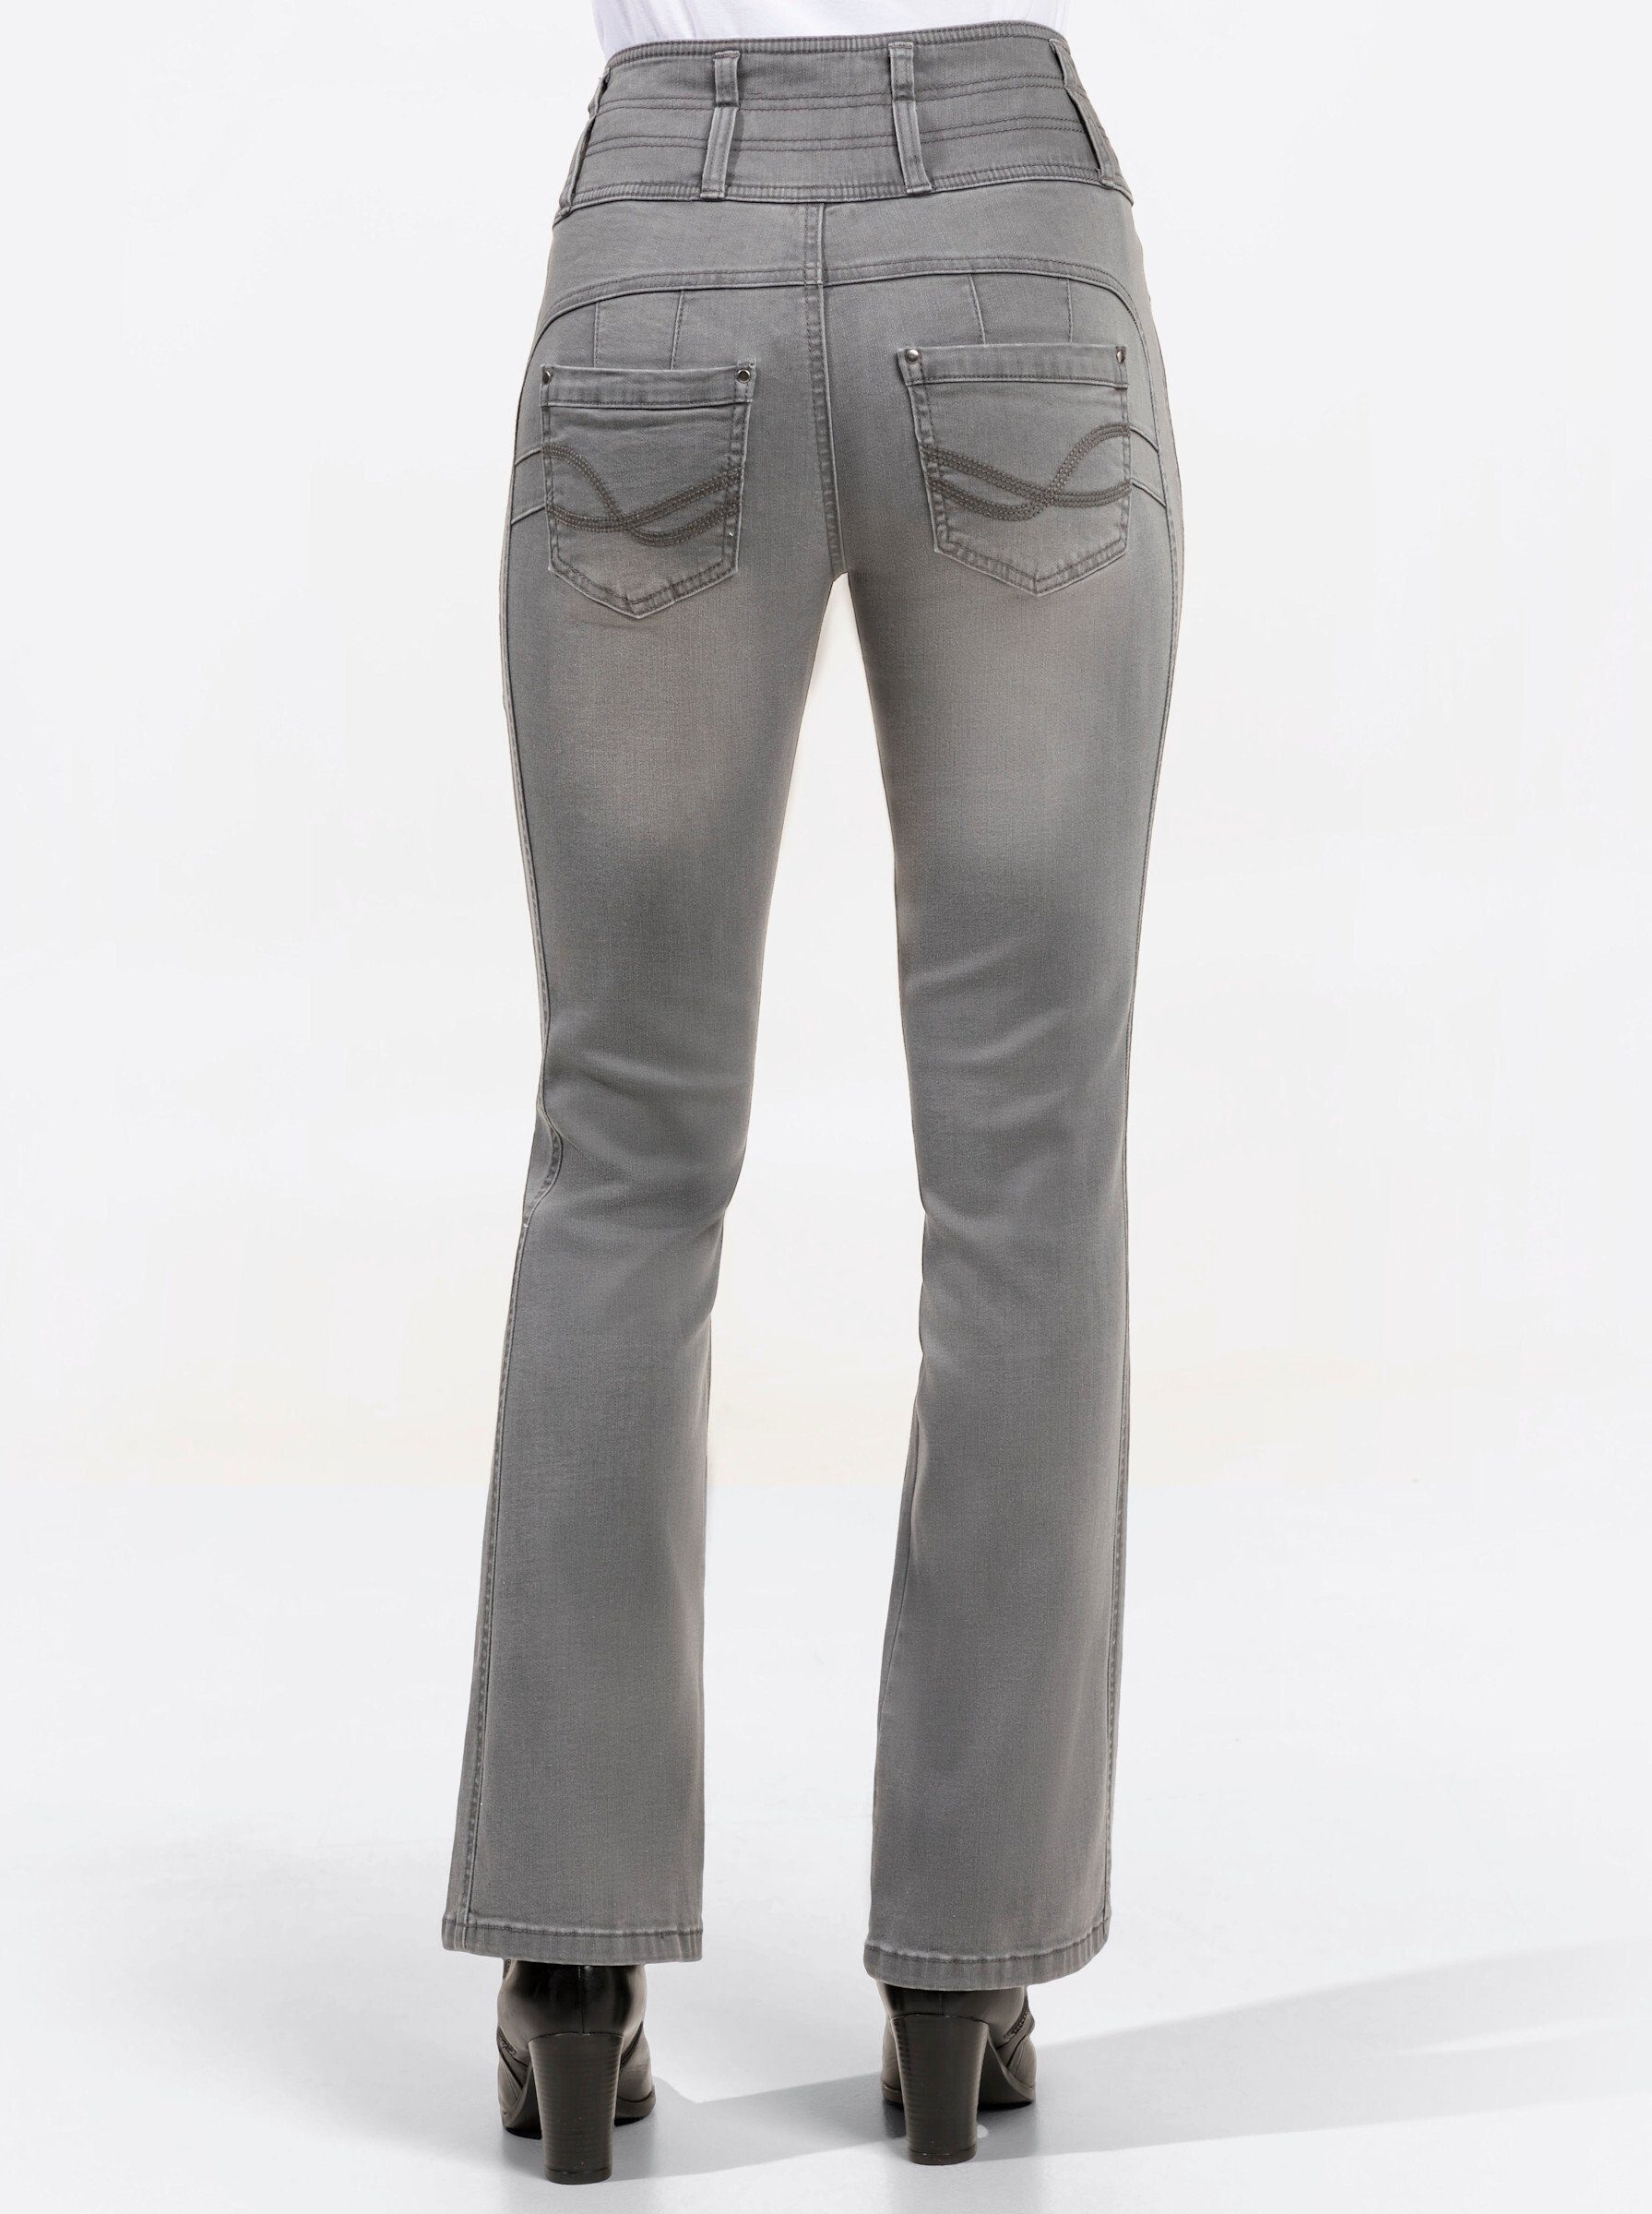 grey-denim Jeans WEIDEN WITT light Bequeme